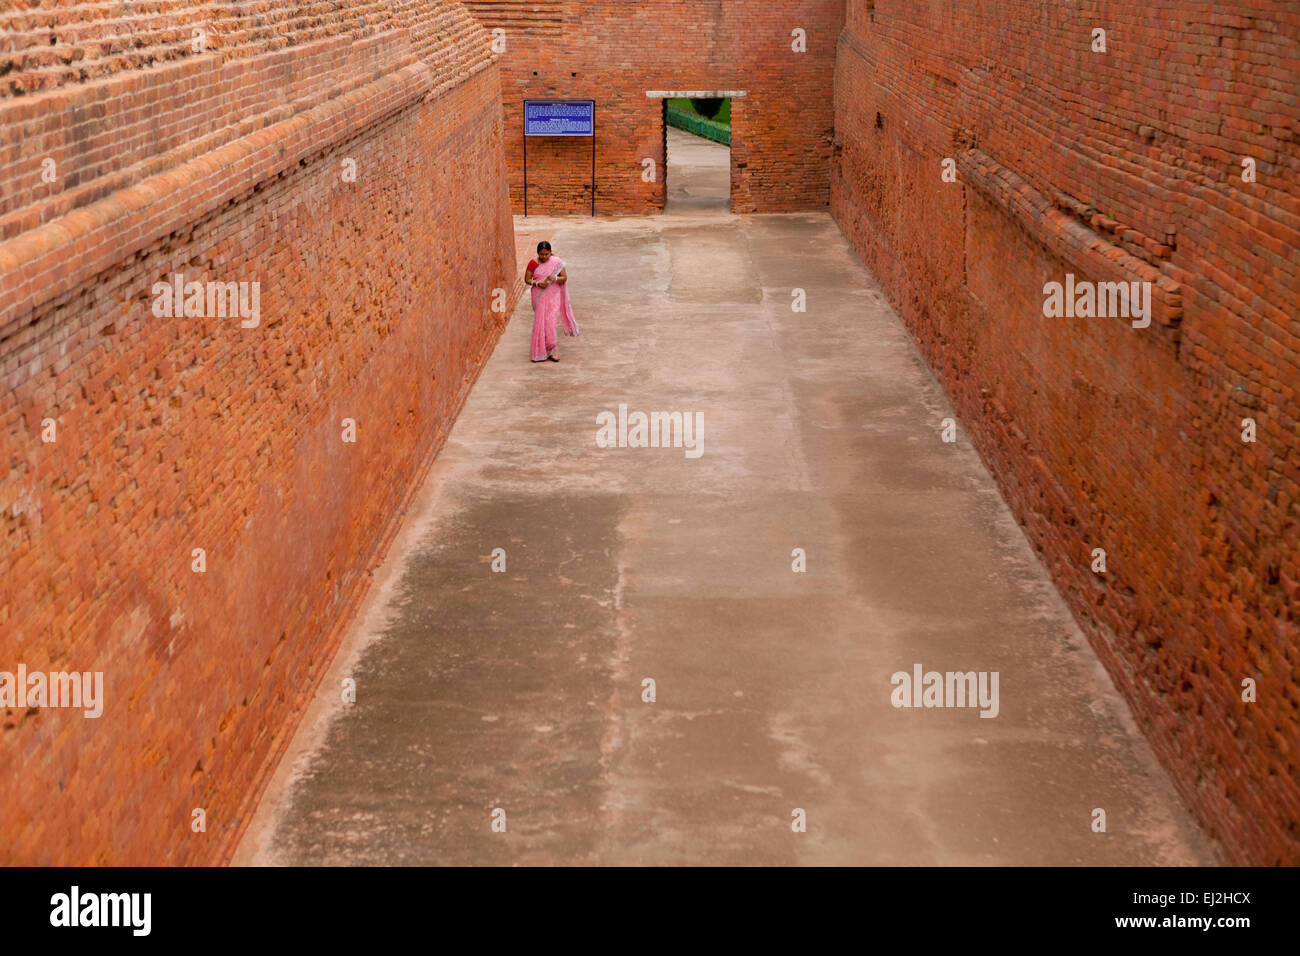 Eine Besucherin geht durch eine Gasse am alten buddhistischen Institutskomplex von Nalanda in Nalanda, Bihar, Indien. Stockfoto